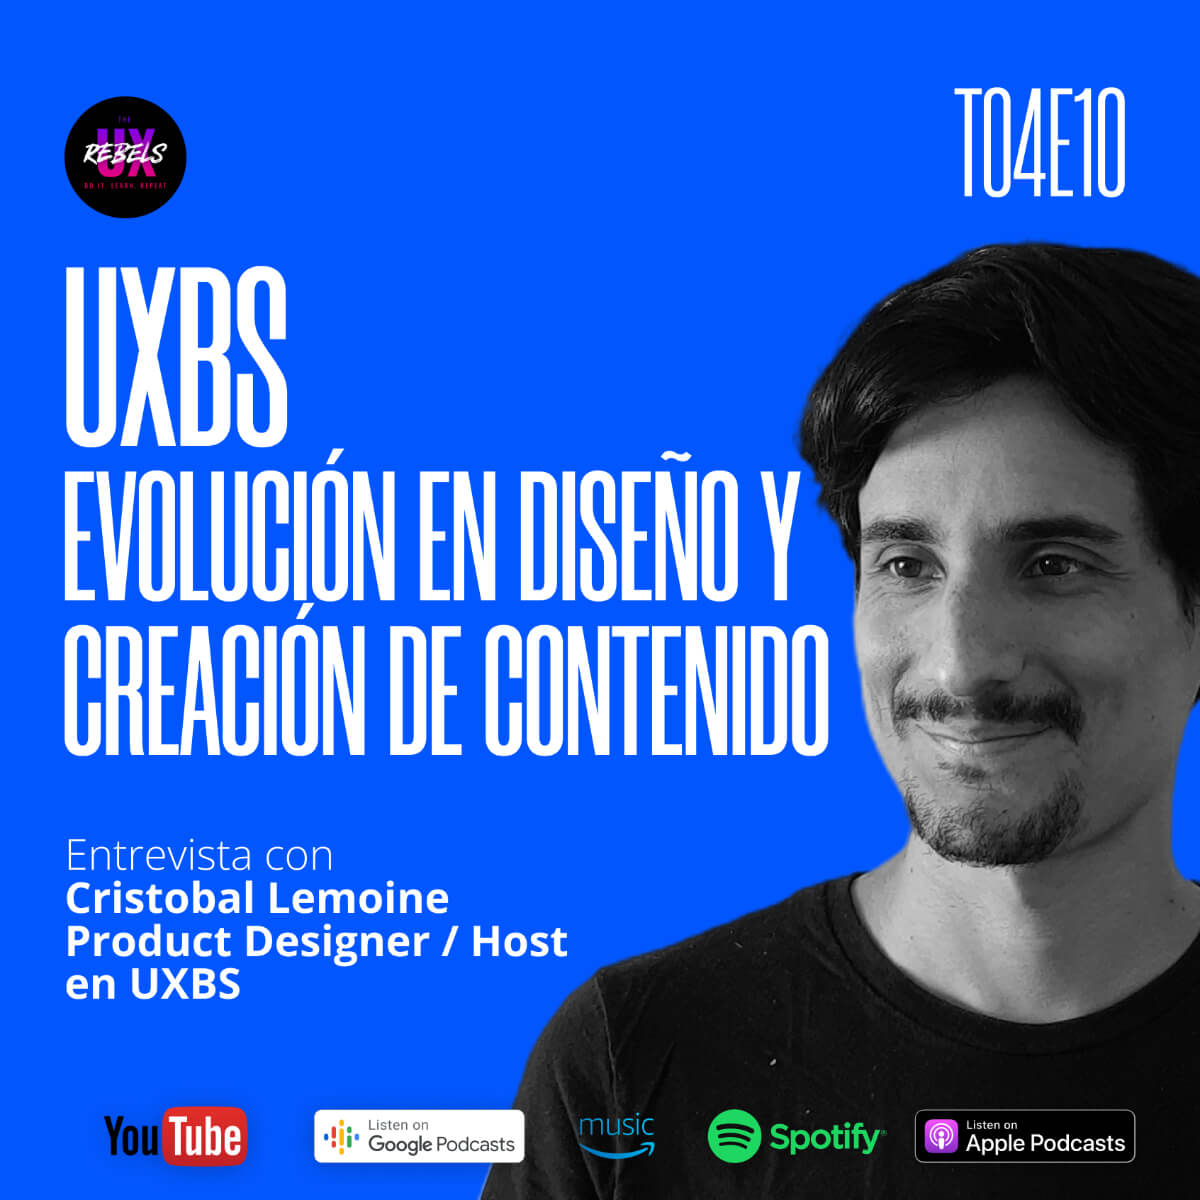 Escucha el episodio con Cristobal Lemoine sobre diseño y creación de contenidos